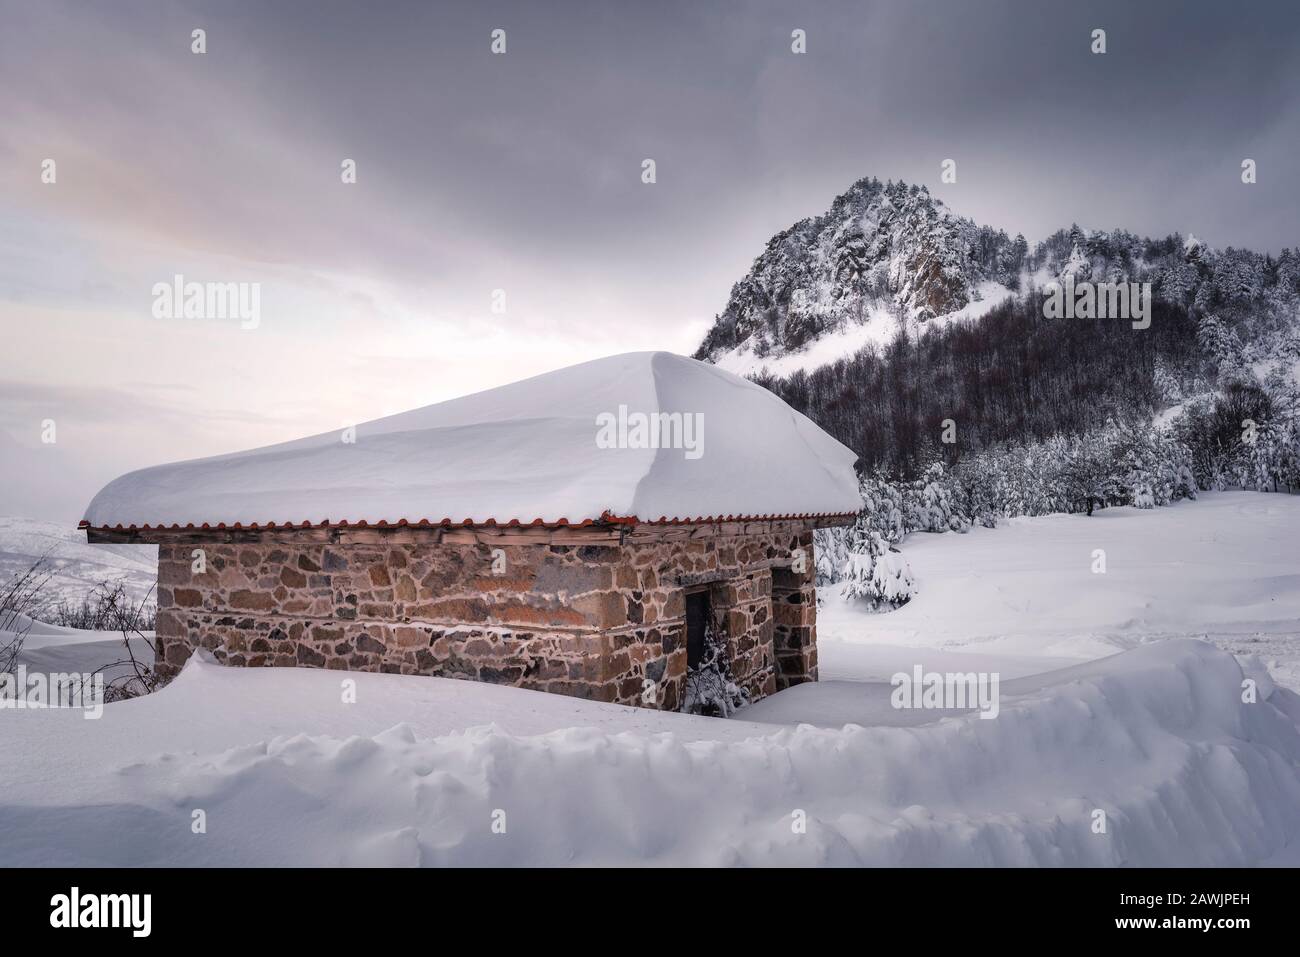 Neige blanche couvrant une maison en pierre sous ciel nuageux d'hiver Banque D'Images